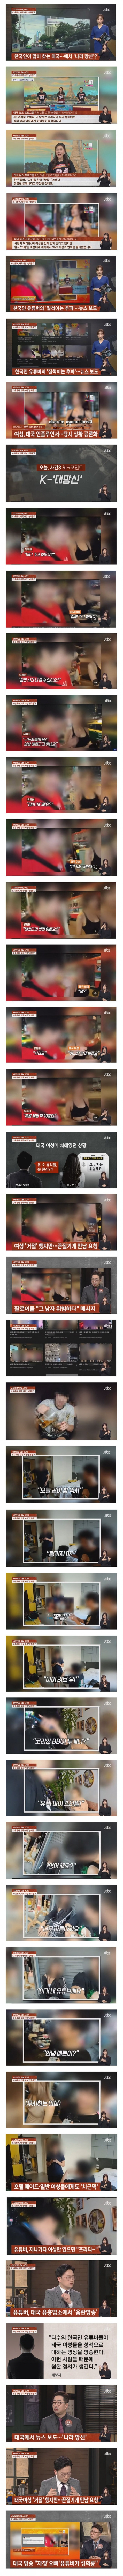 나라망신 시키는 유튜버들 때문에 올라온 주태국 대한민국 대사관 공지사항